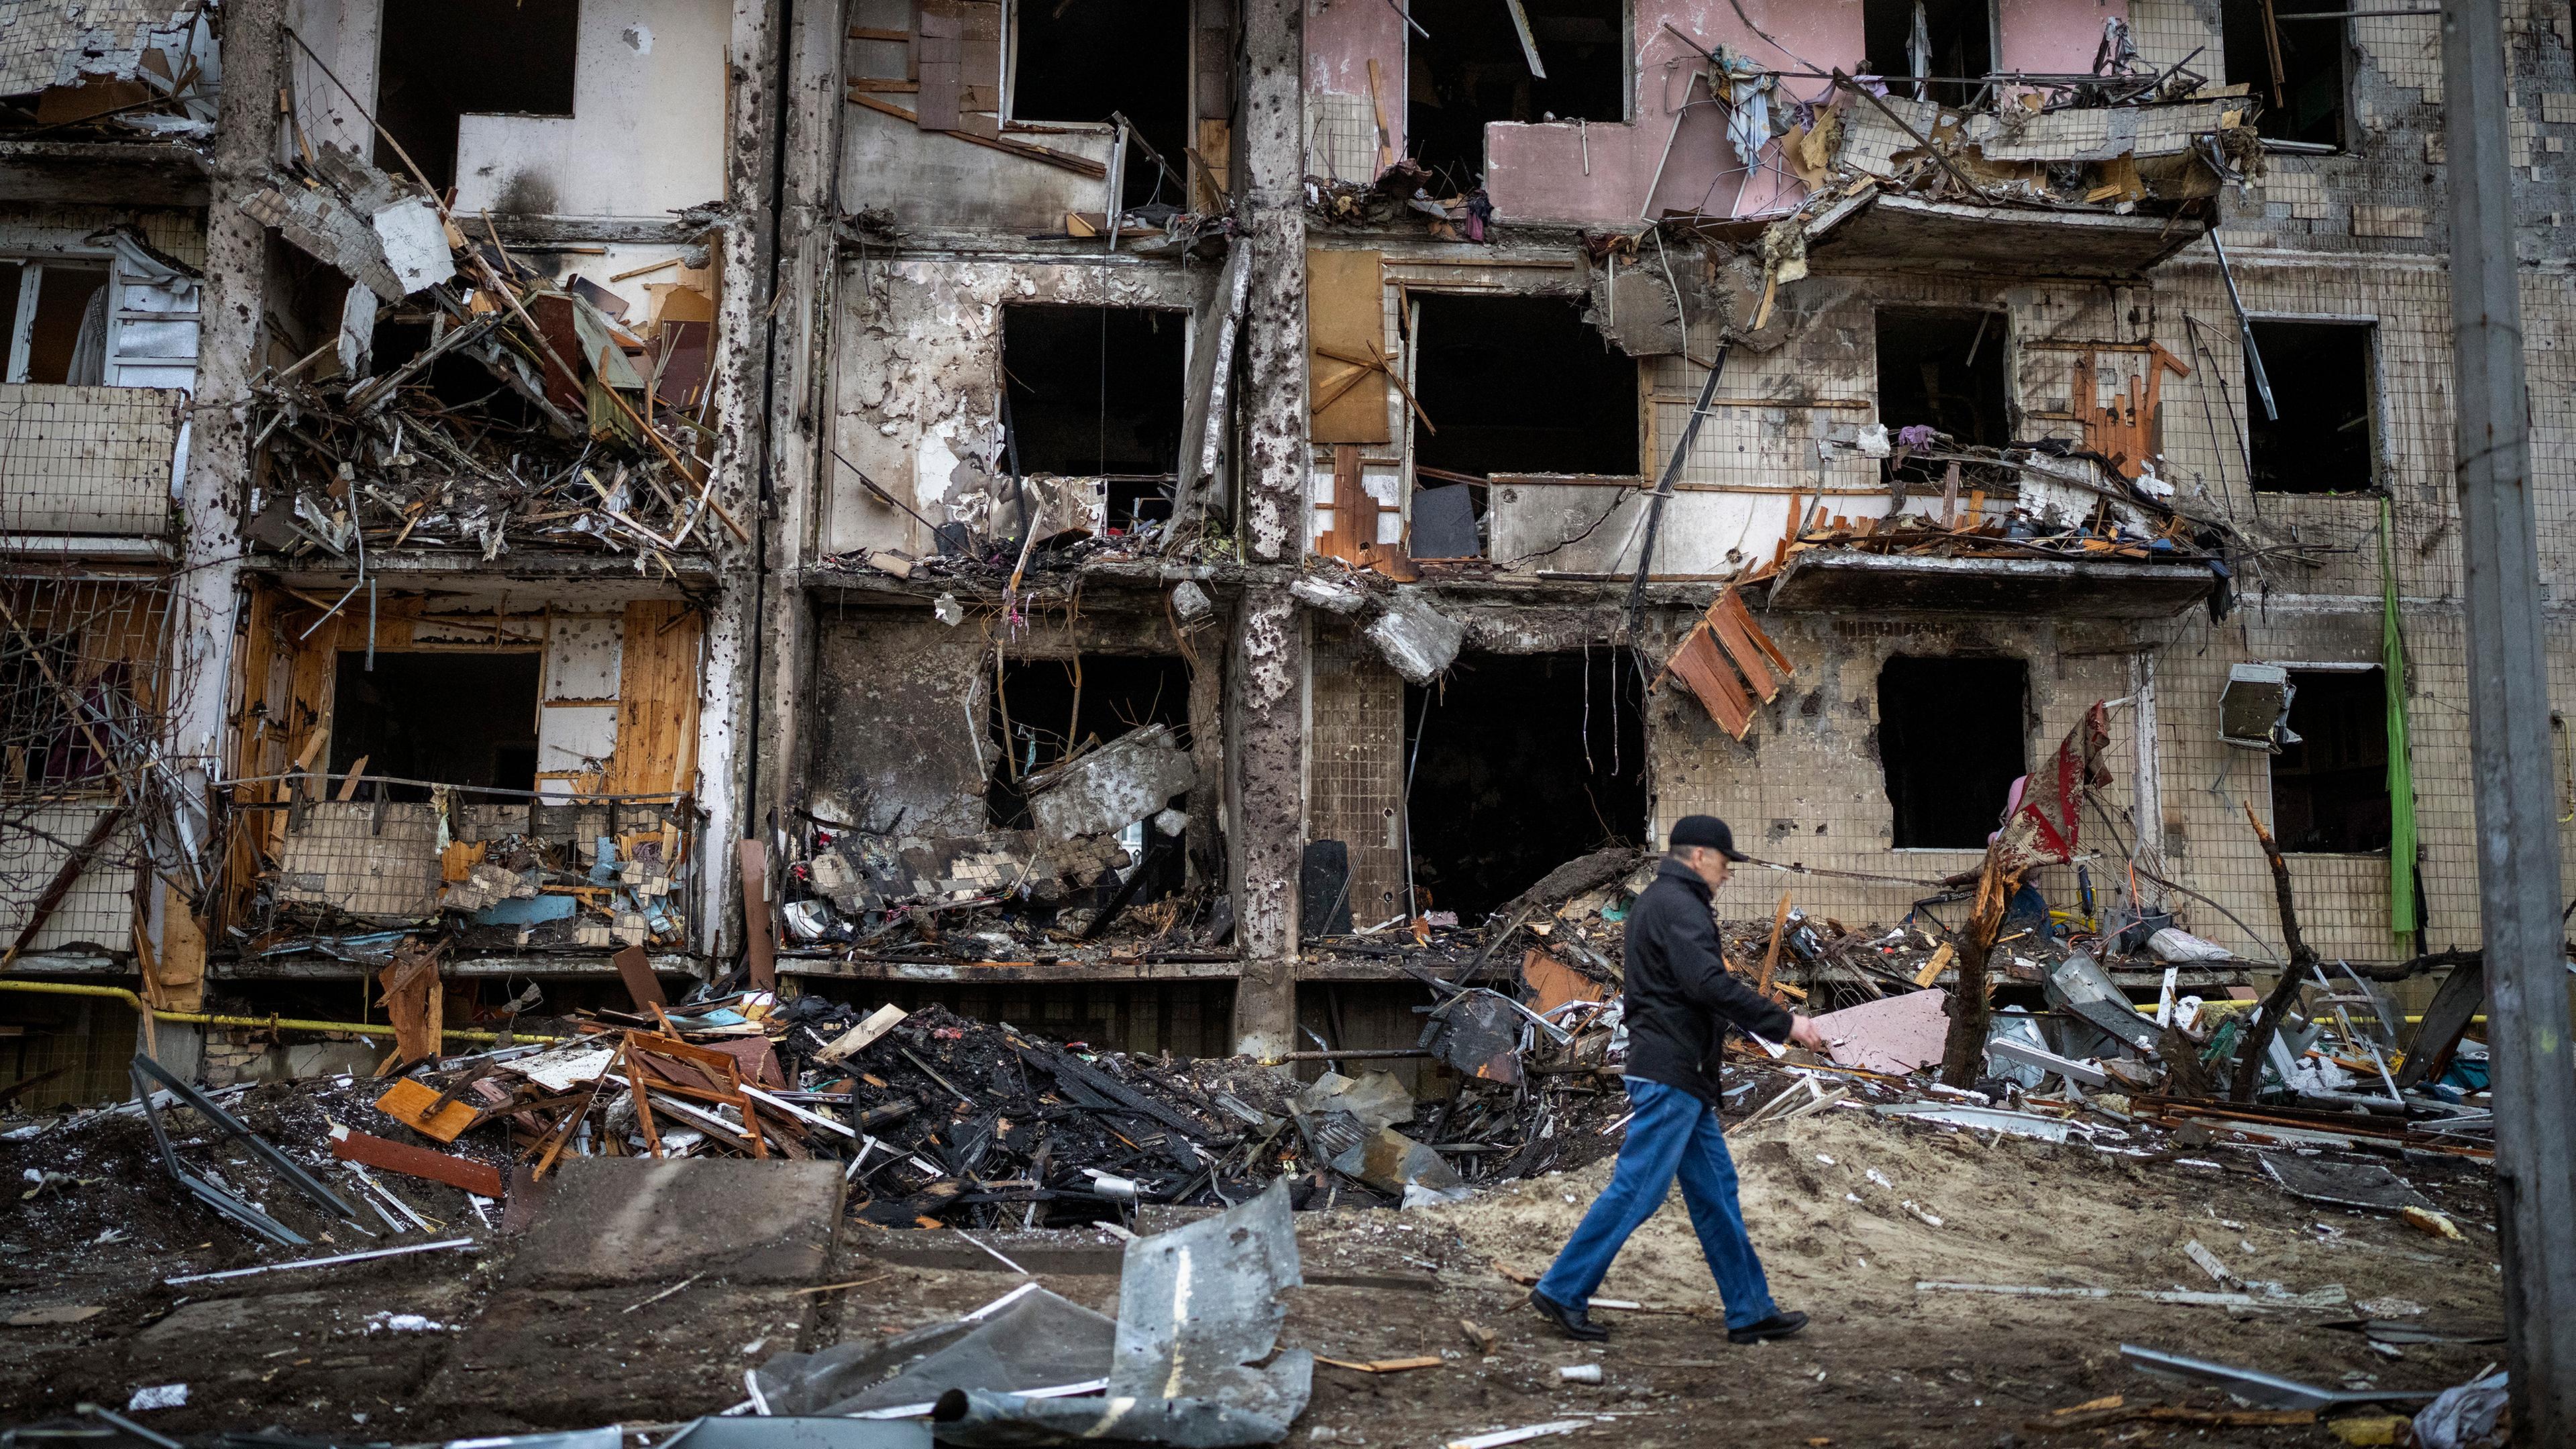 24 25 26 апреля. Разрушенные здания в Украине. Разрушенный дом. Последствия войны.